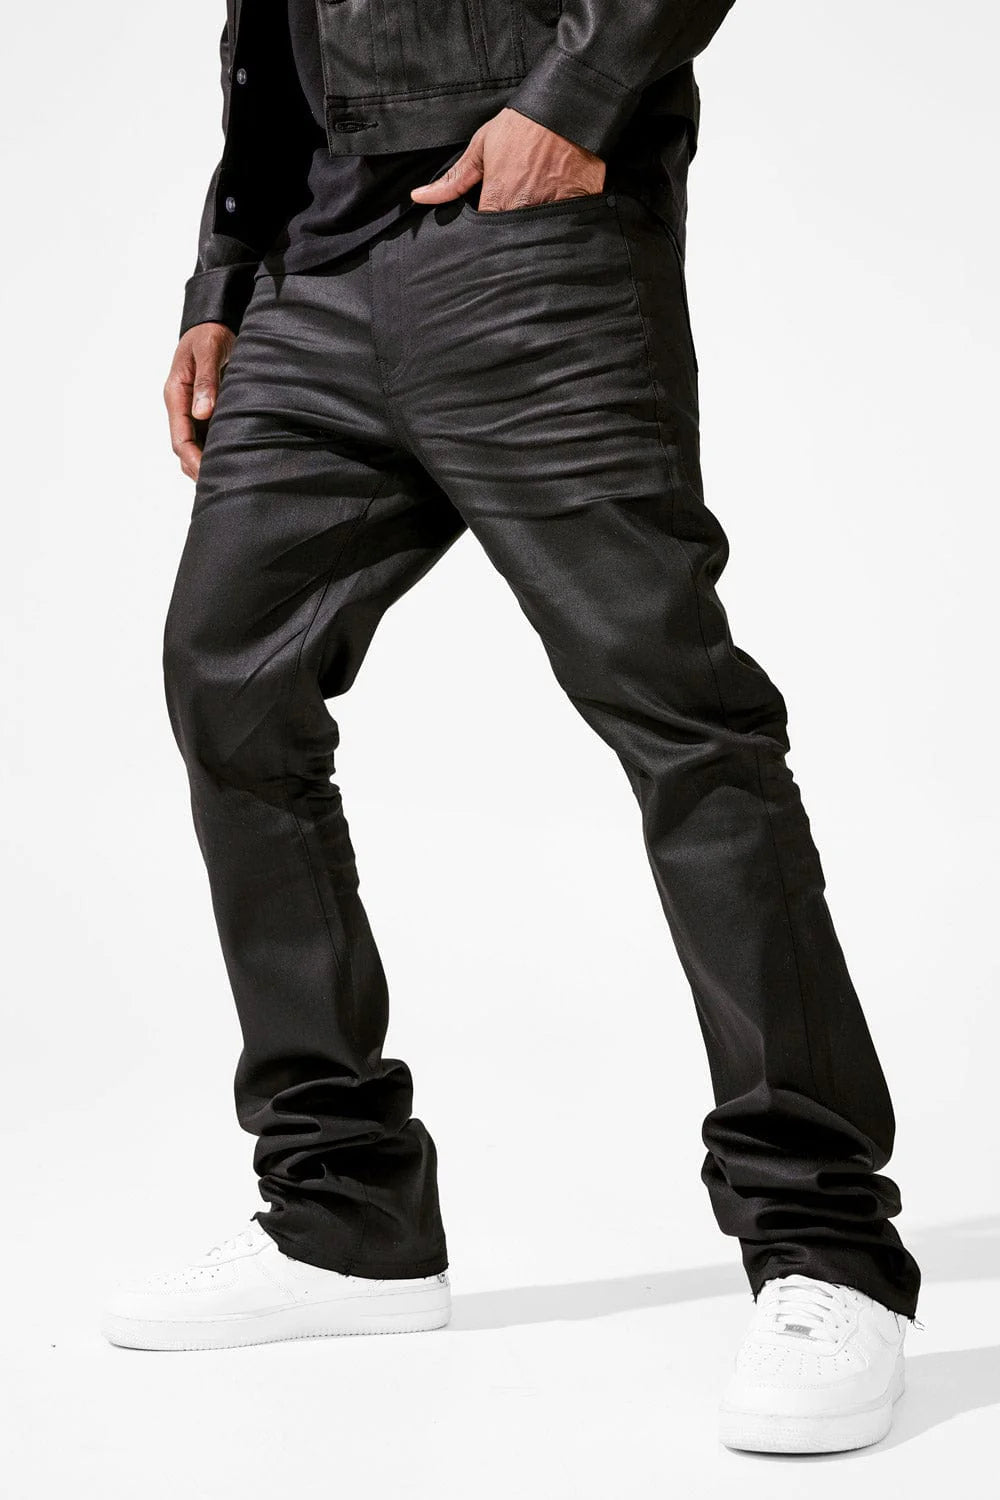 Martin Stacked - Smooth Criminal Denim Jeans 2.0 - Jet Black